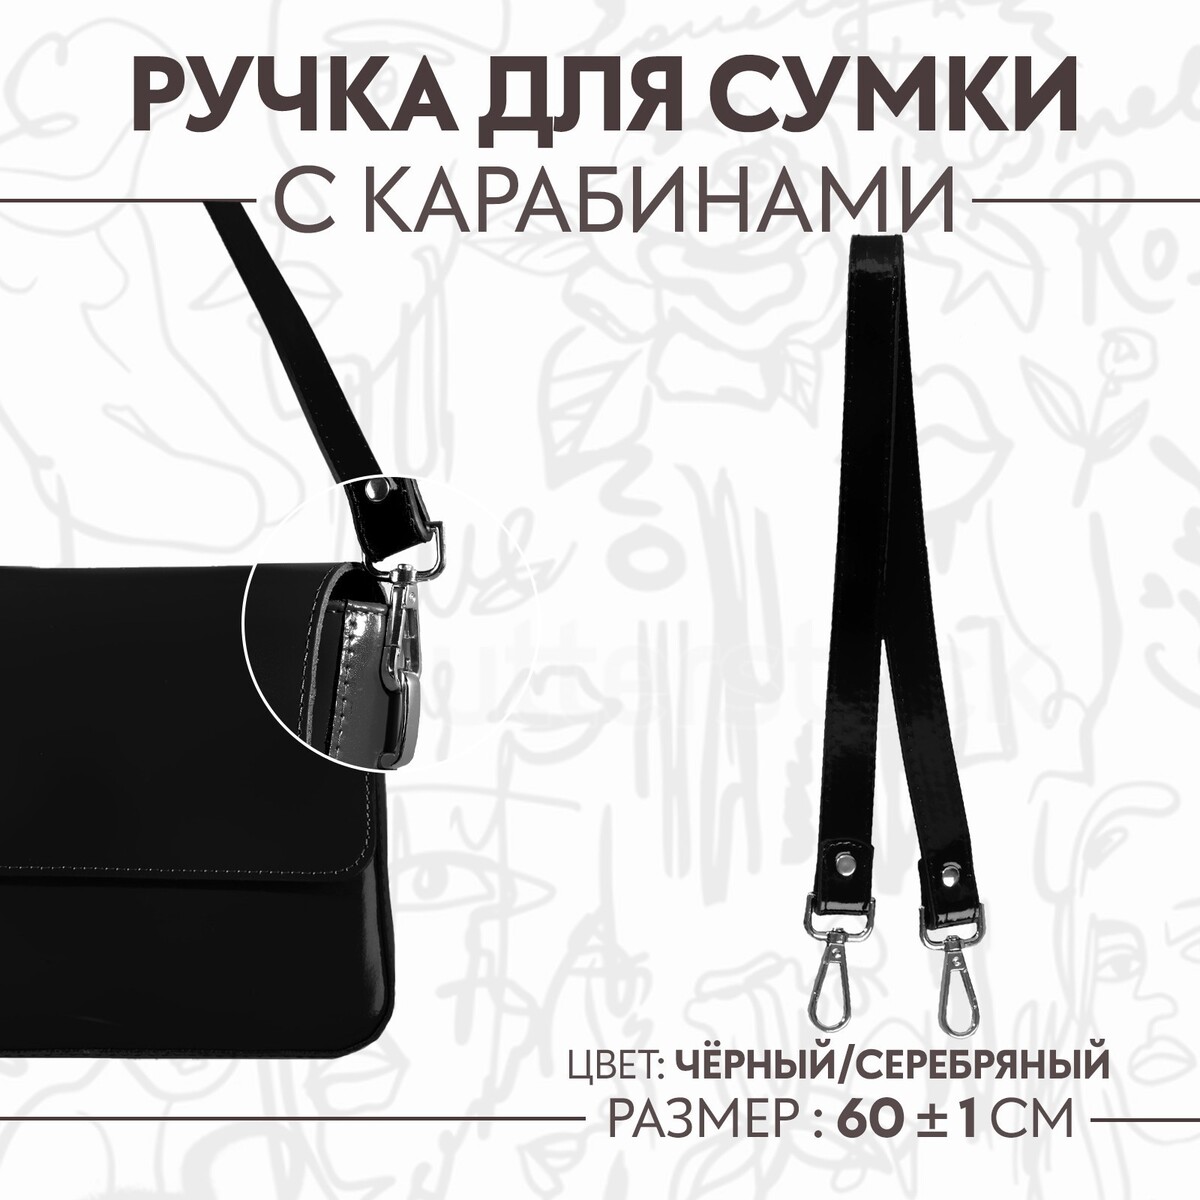 Ручка для сумки лакированная, с карабинами, 60 ± 1 см, цвет черный ручка для сумки с карабинами 60 × 2 см